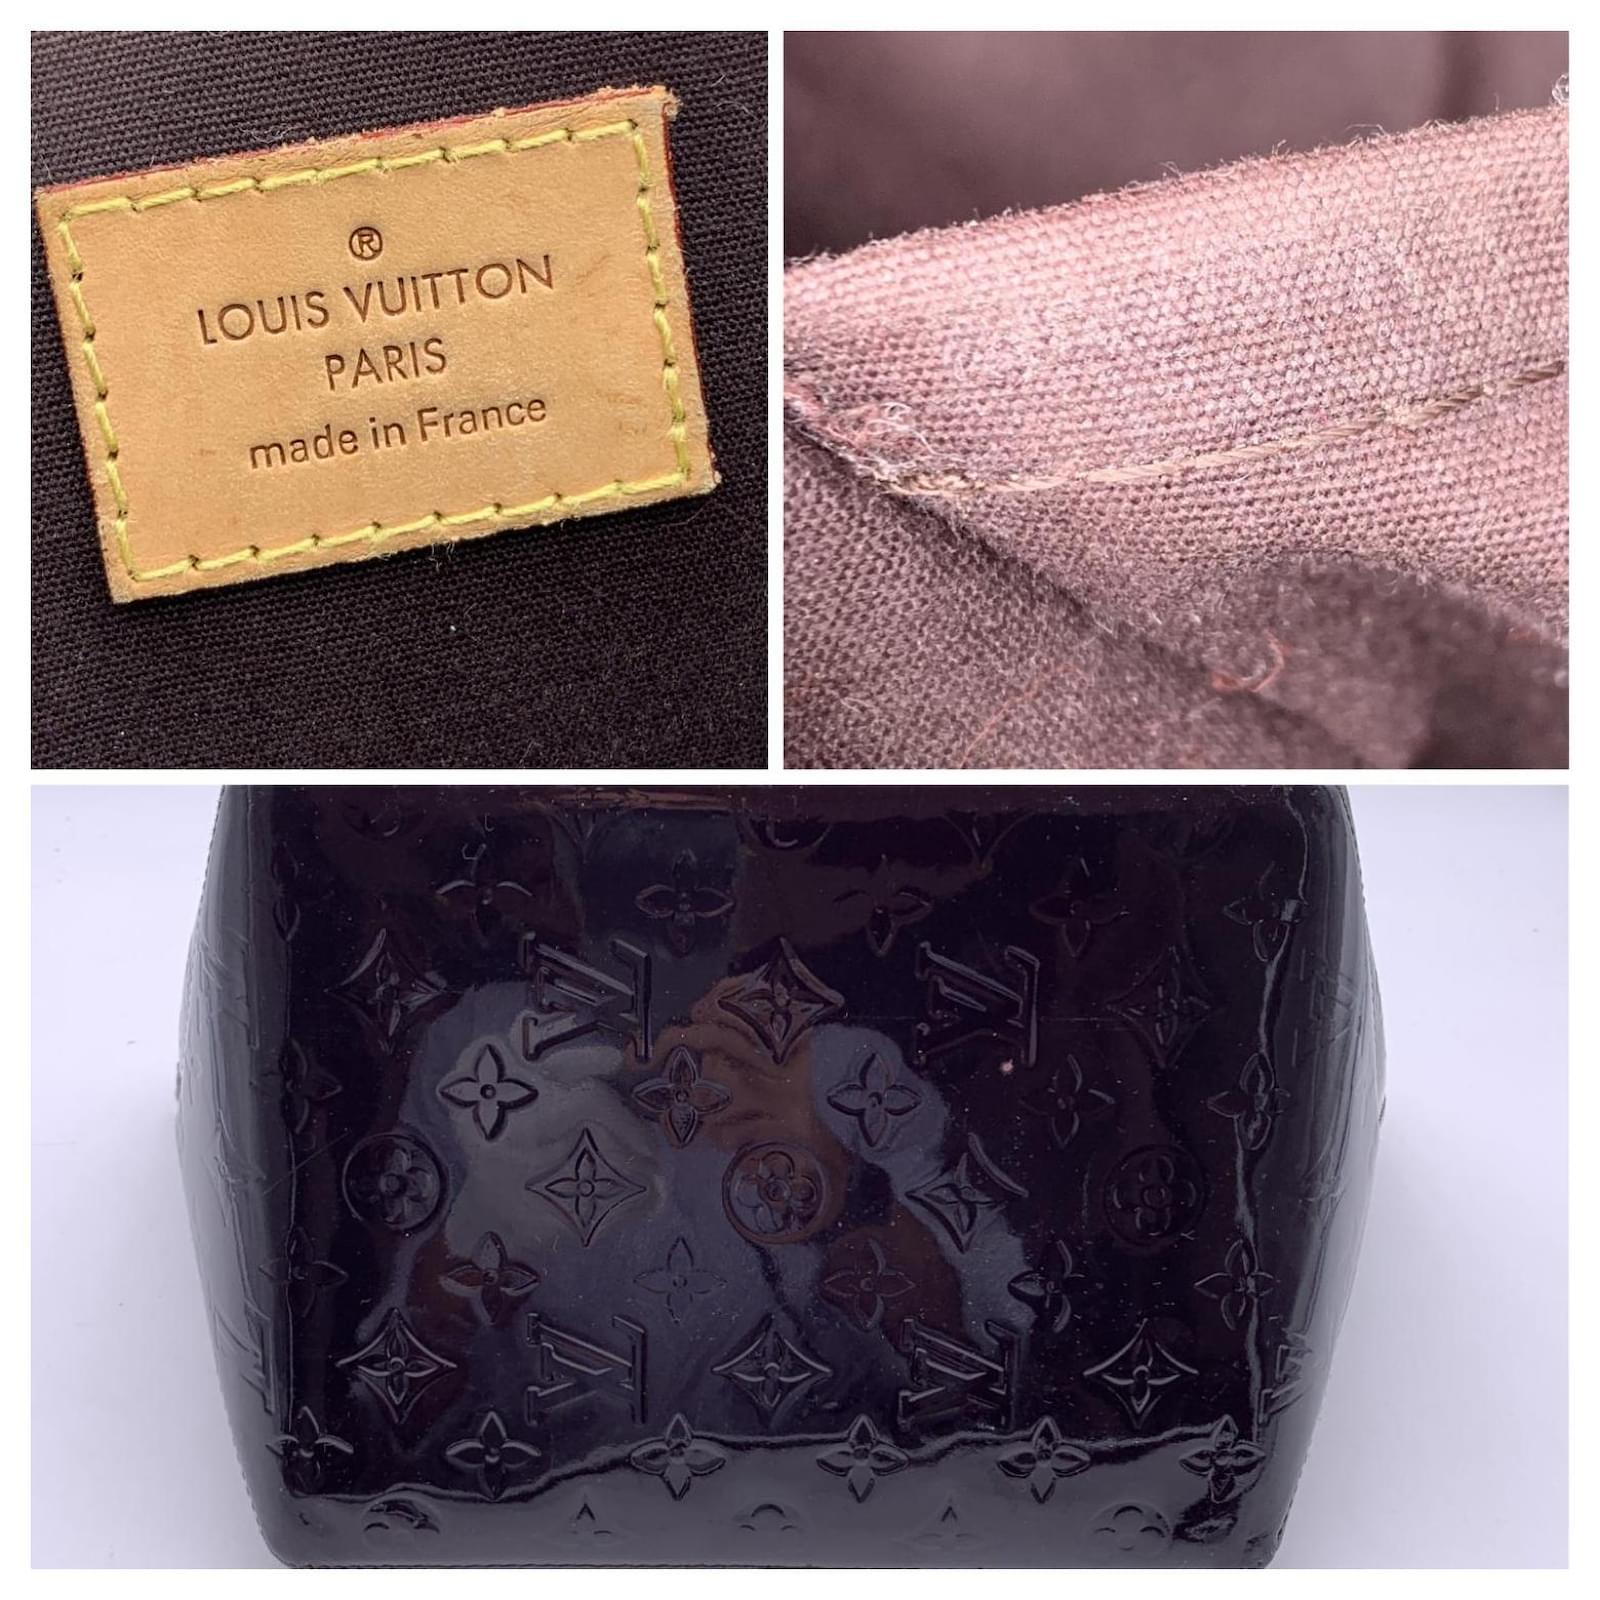 Louis Vuitton Amarante Purple Vernis Bellevue Handheld PM Bag